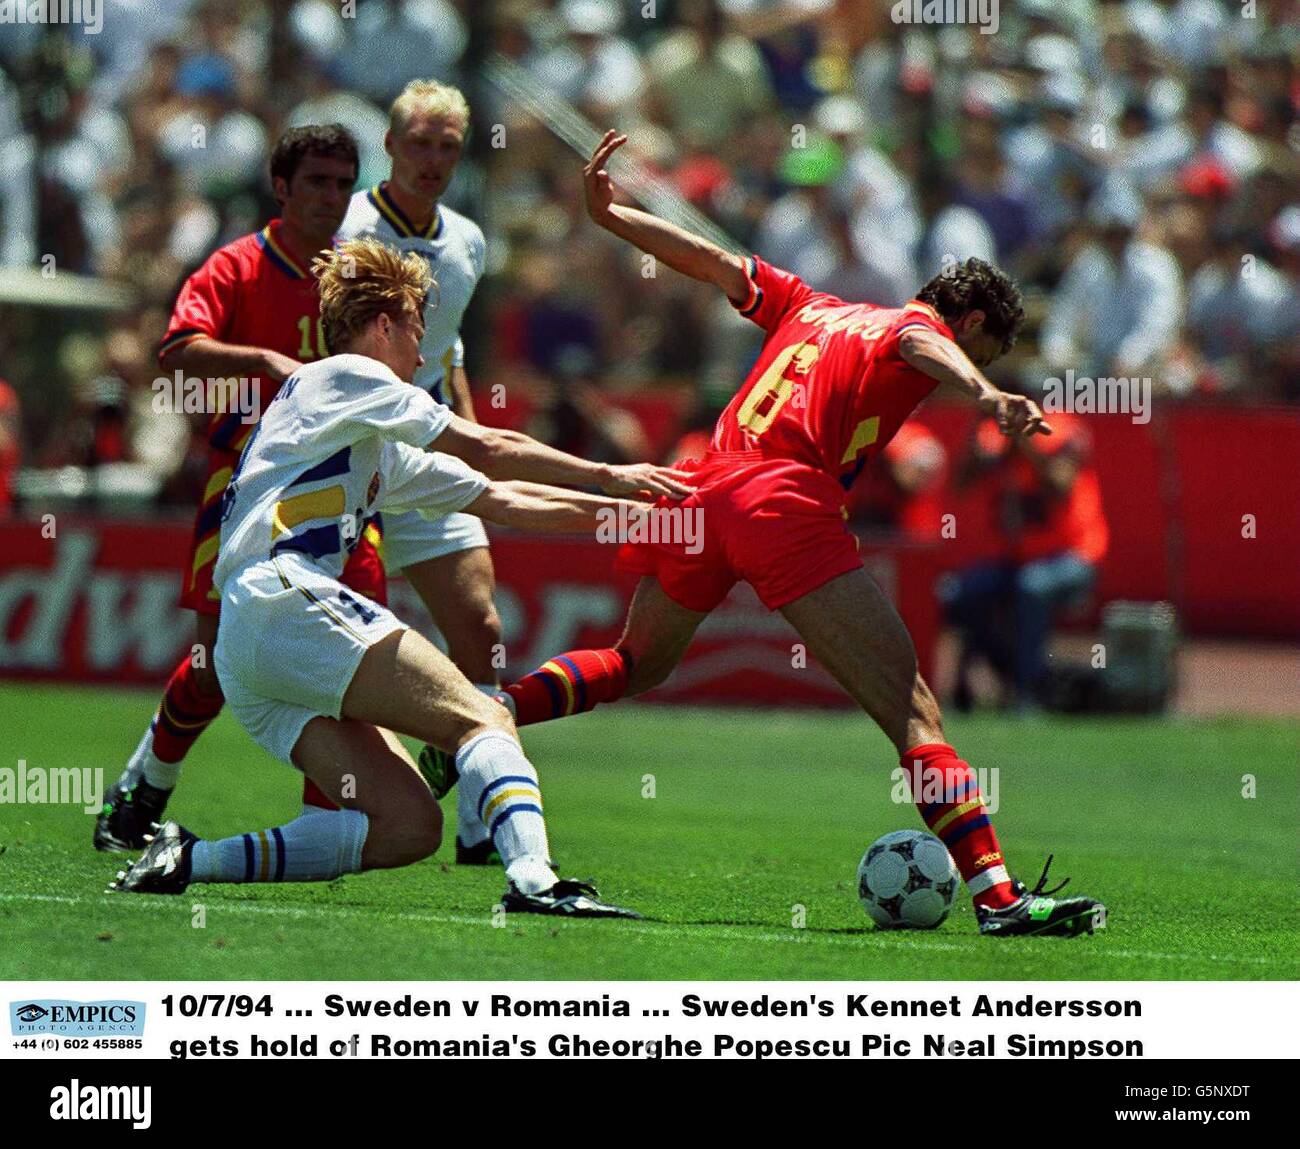 EMPICS, 4 Svezia v Romania .... Mondiali di Calcio 94 Foto stock - Alamy